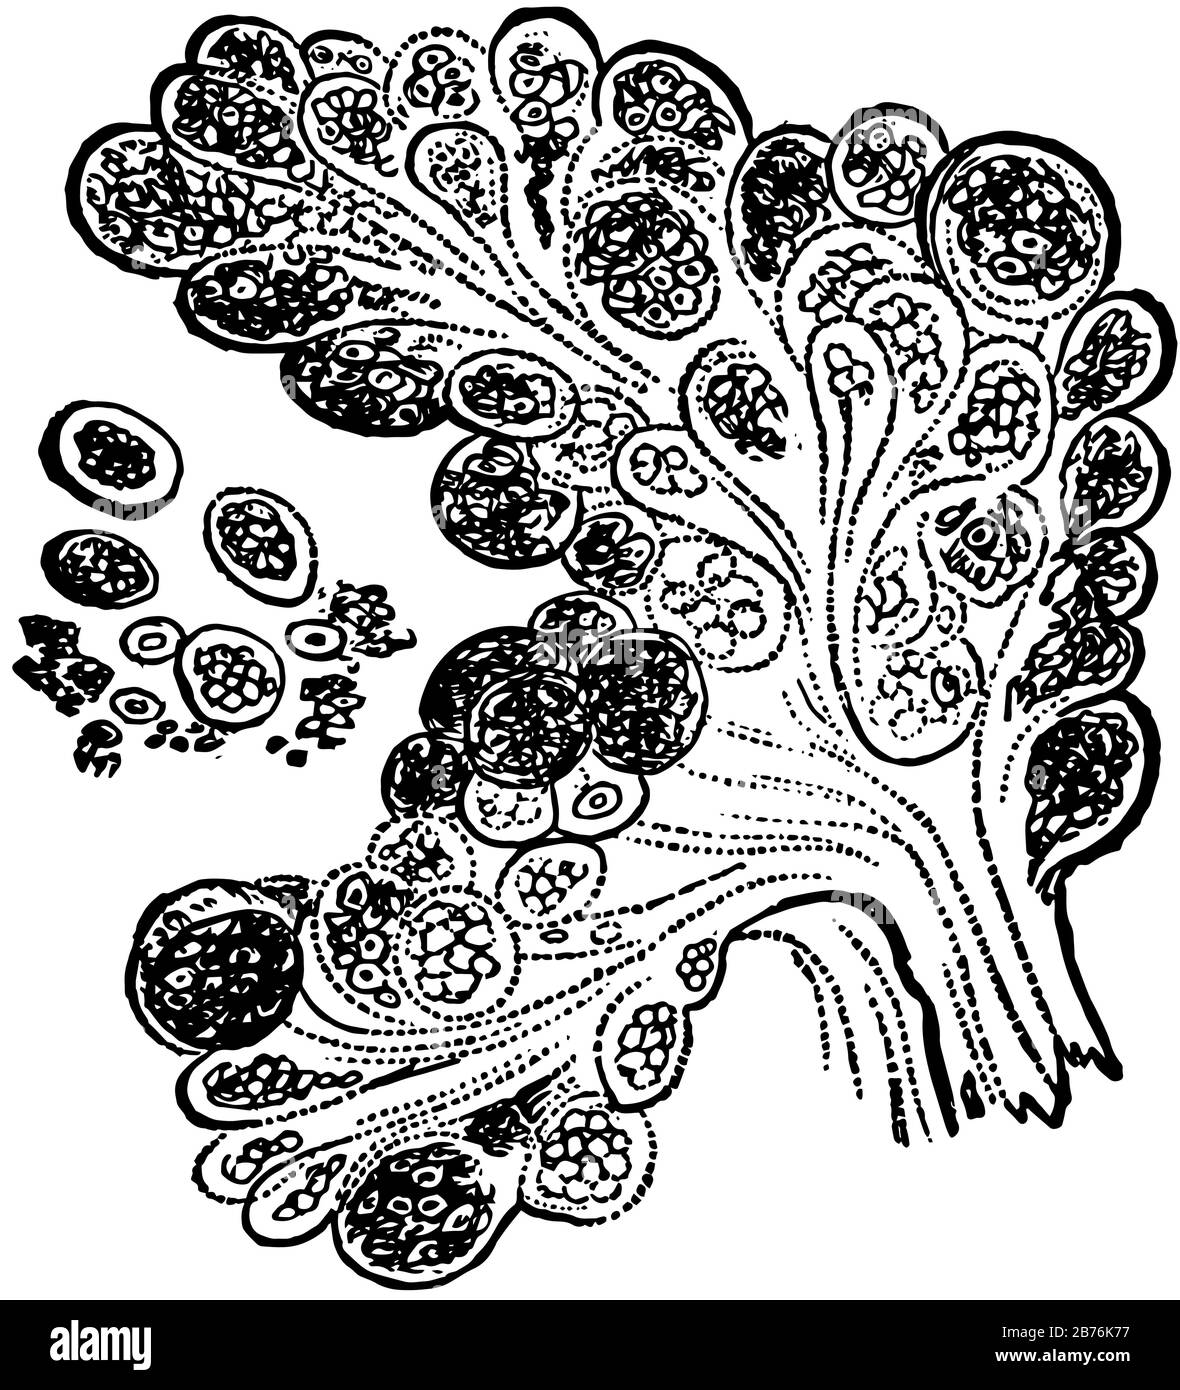 Questa illustrazione rappresenta Racemose Gland, disegno a linea vintage o illustrazione per incisione. Illustrazione Vettoriale